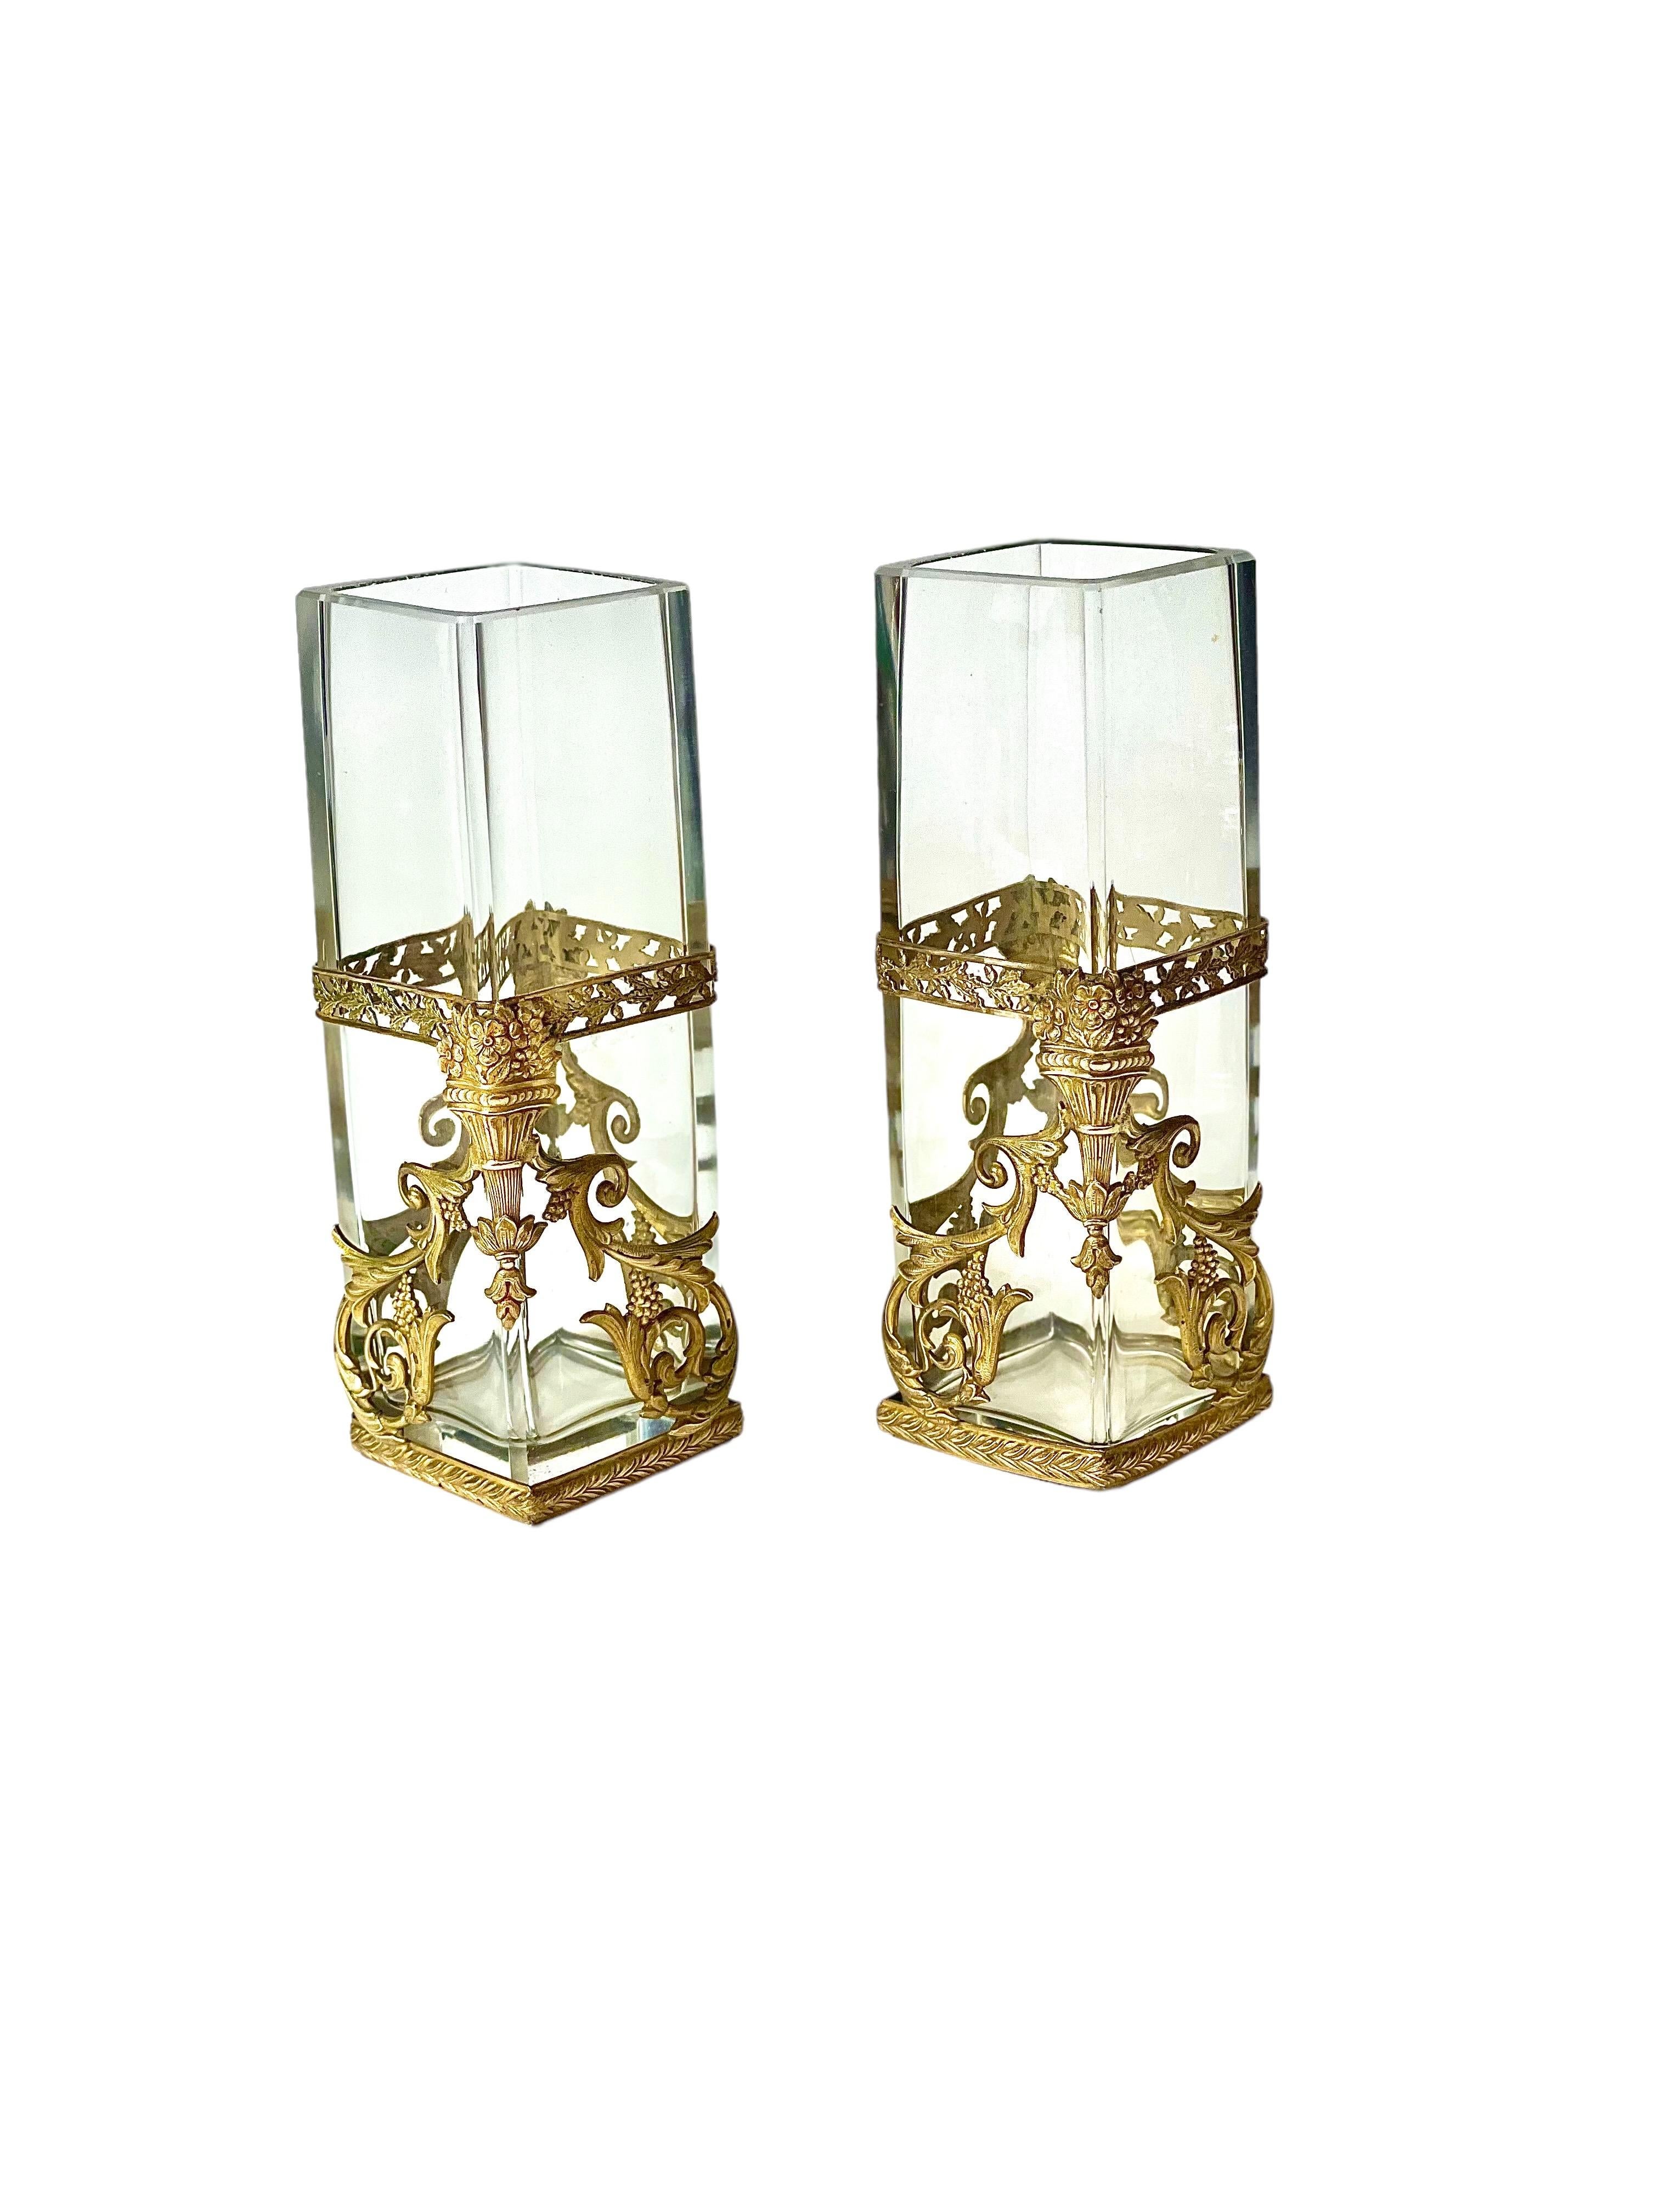 Une très jolie paire de vases en verre de forme quadrangulaire, décorés de montures en bronze doré exceptionnellement détaillées dans le style Louis XVI. Ces vases datent d'environ 1900 et sont en excellent état.